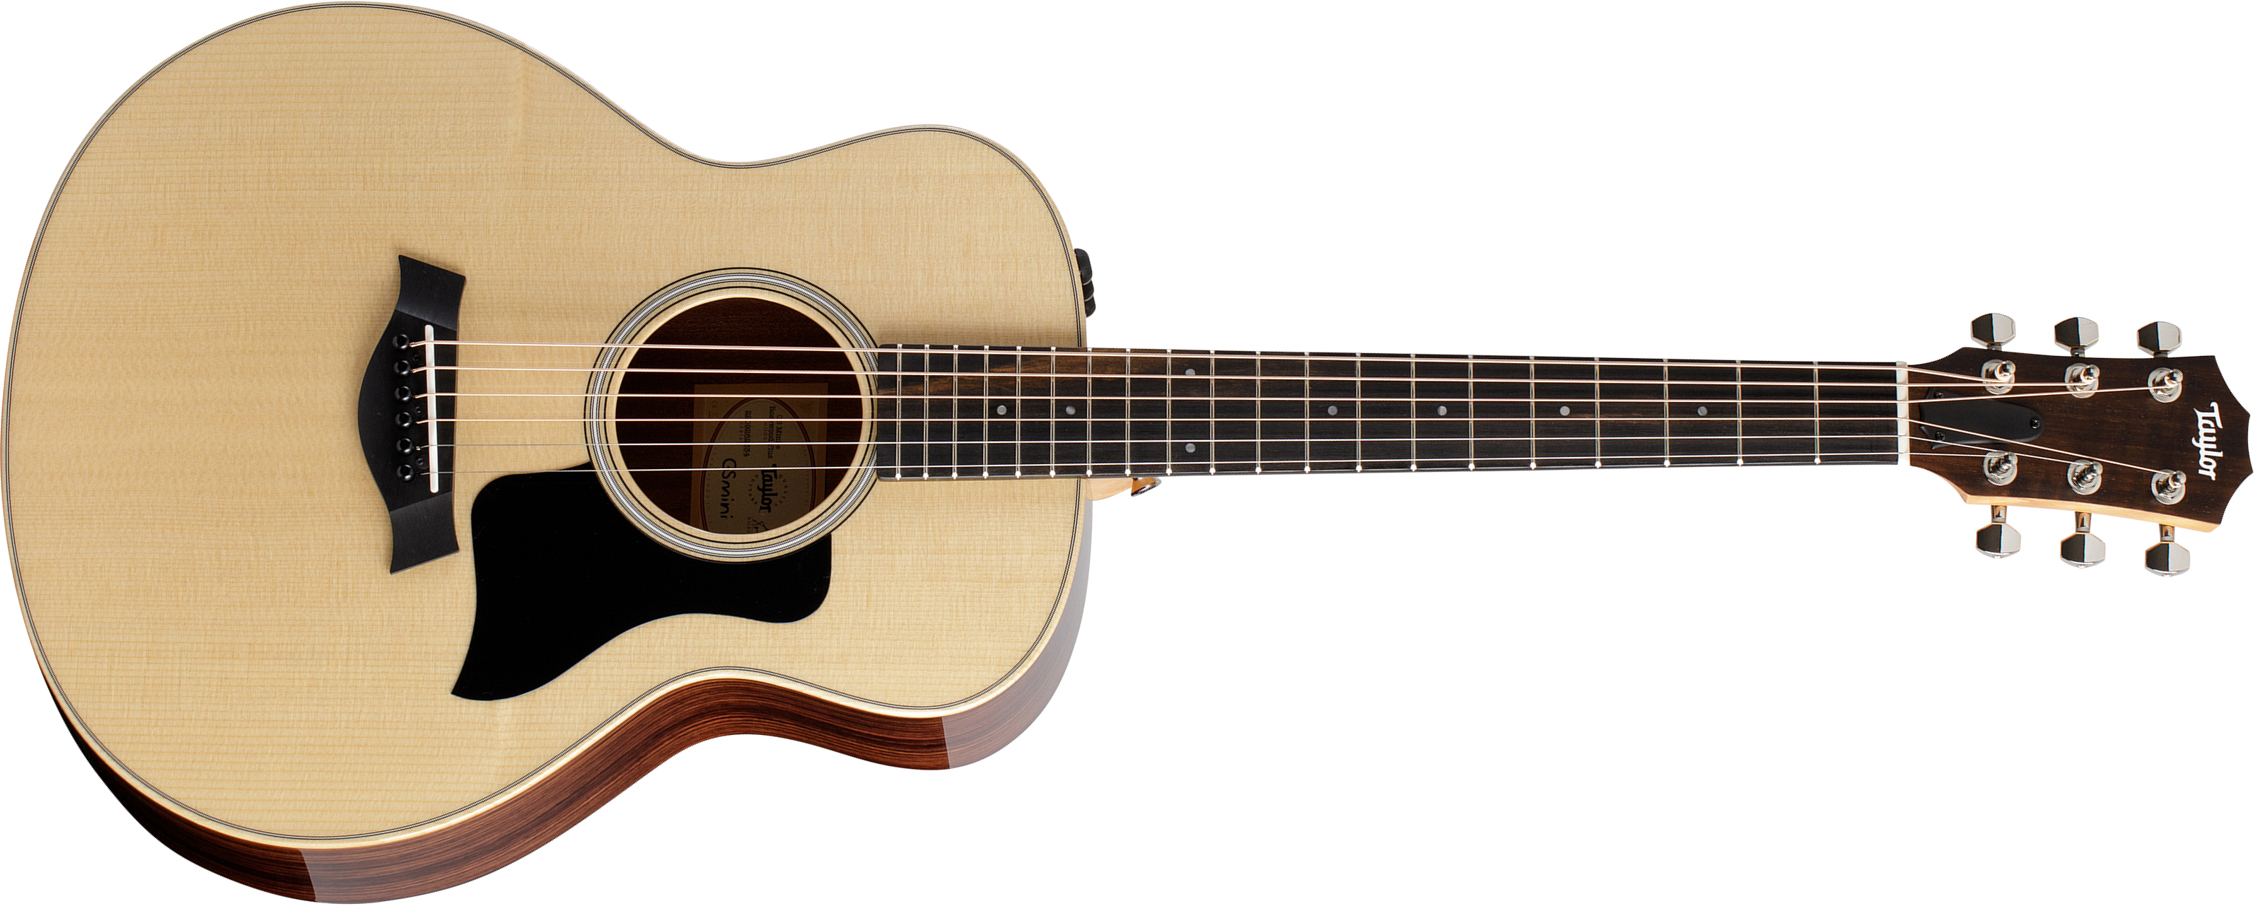 Taylor Gs Mini-e Rosewood Plus Epicea Palissandre Eb Es2 - Natural - Travel acoustic guitar - Main picture